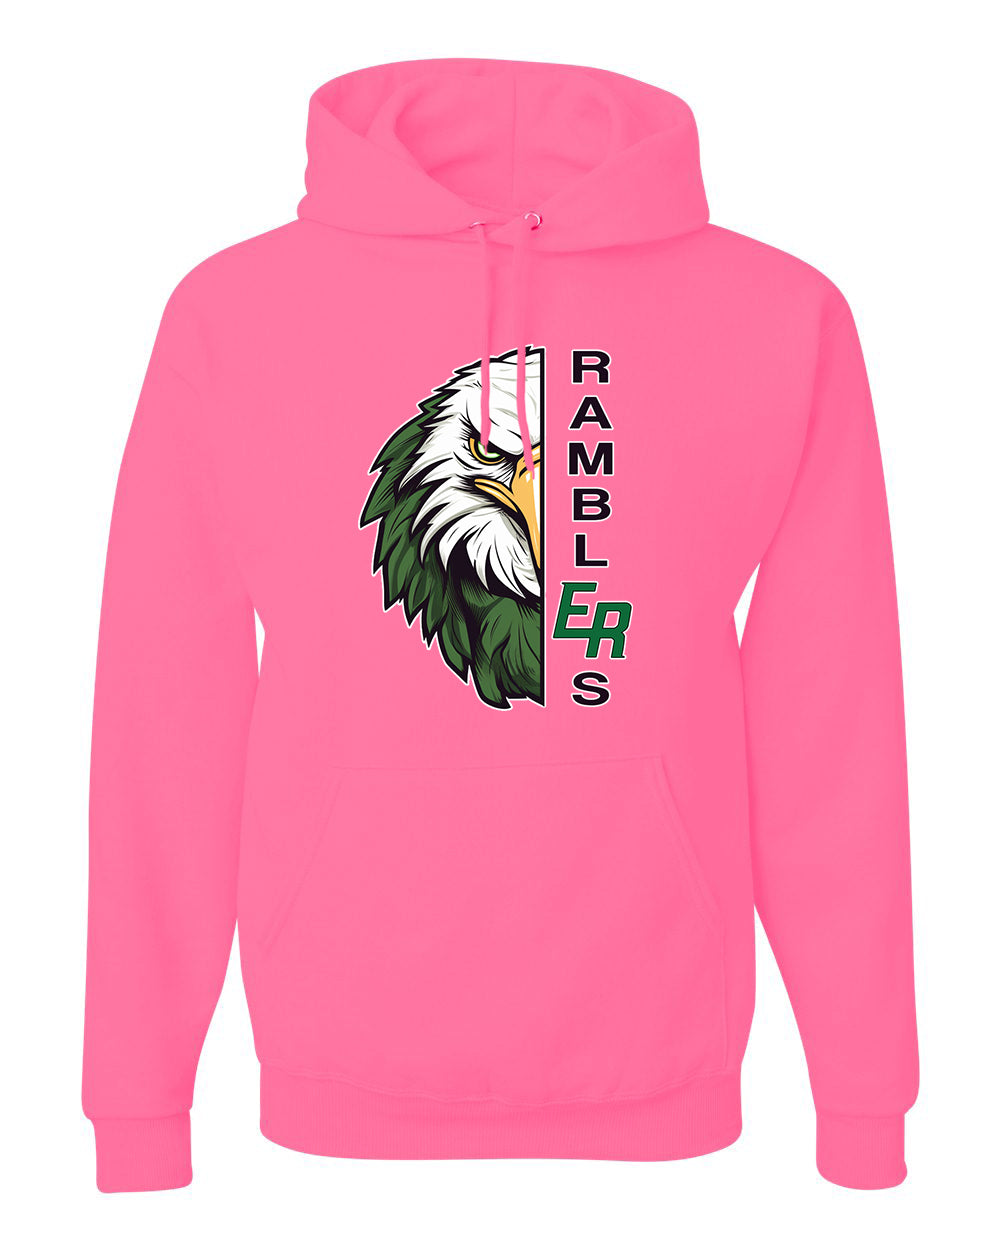 Ramblers Adult Hooded Sweatshirt Pink - 996MR